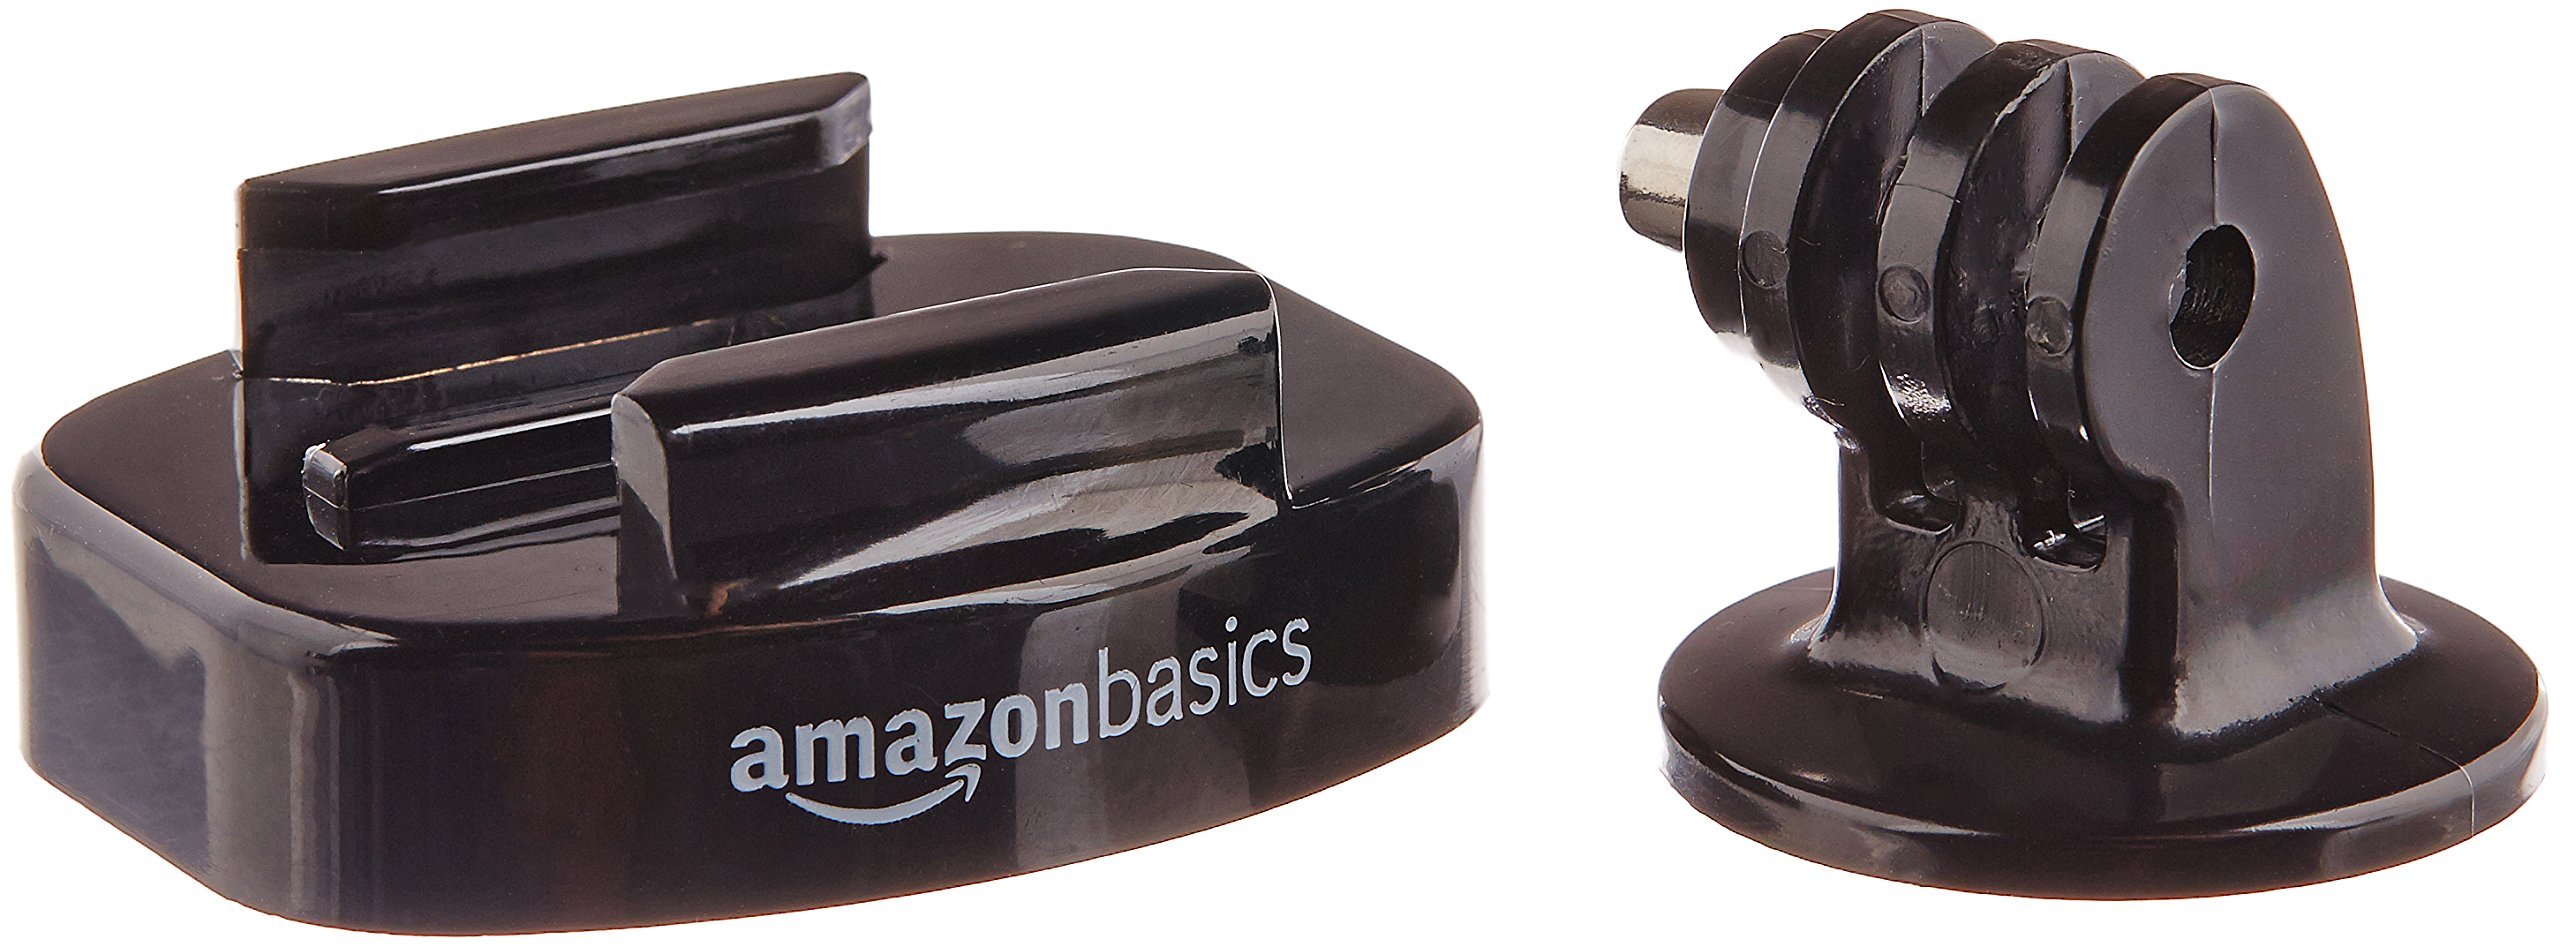 AmazonBasics Tripod Mounts for GoPro